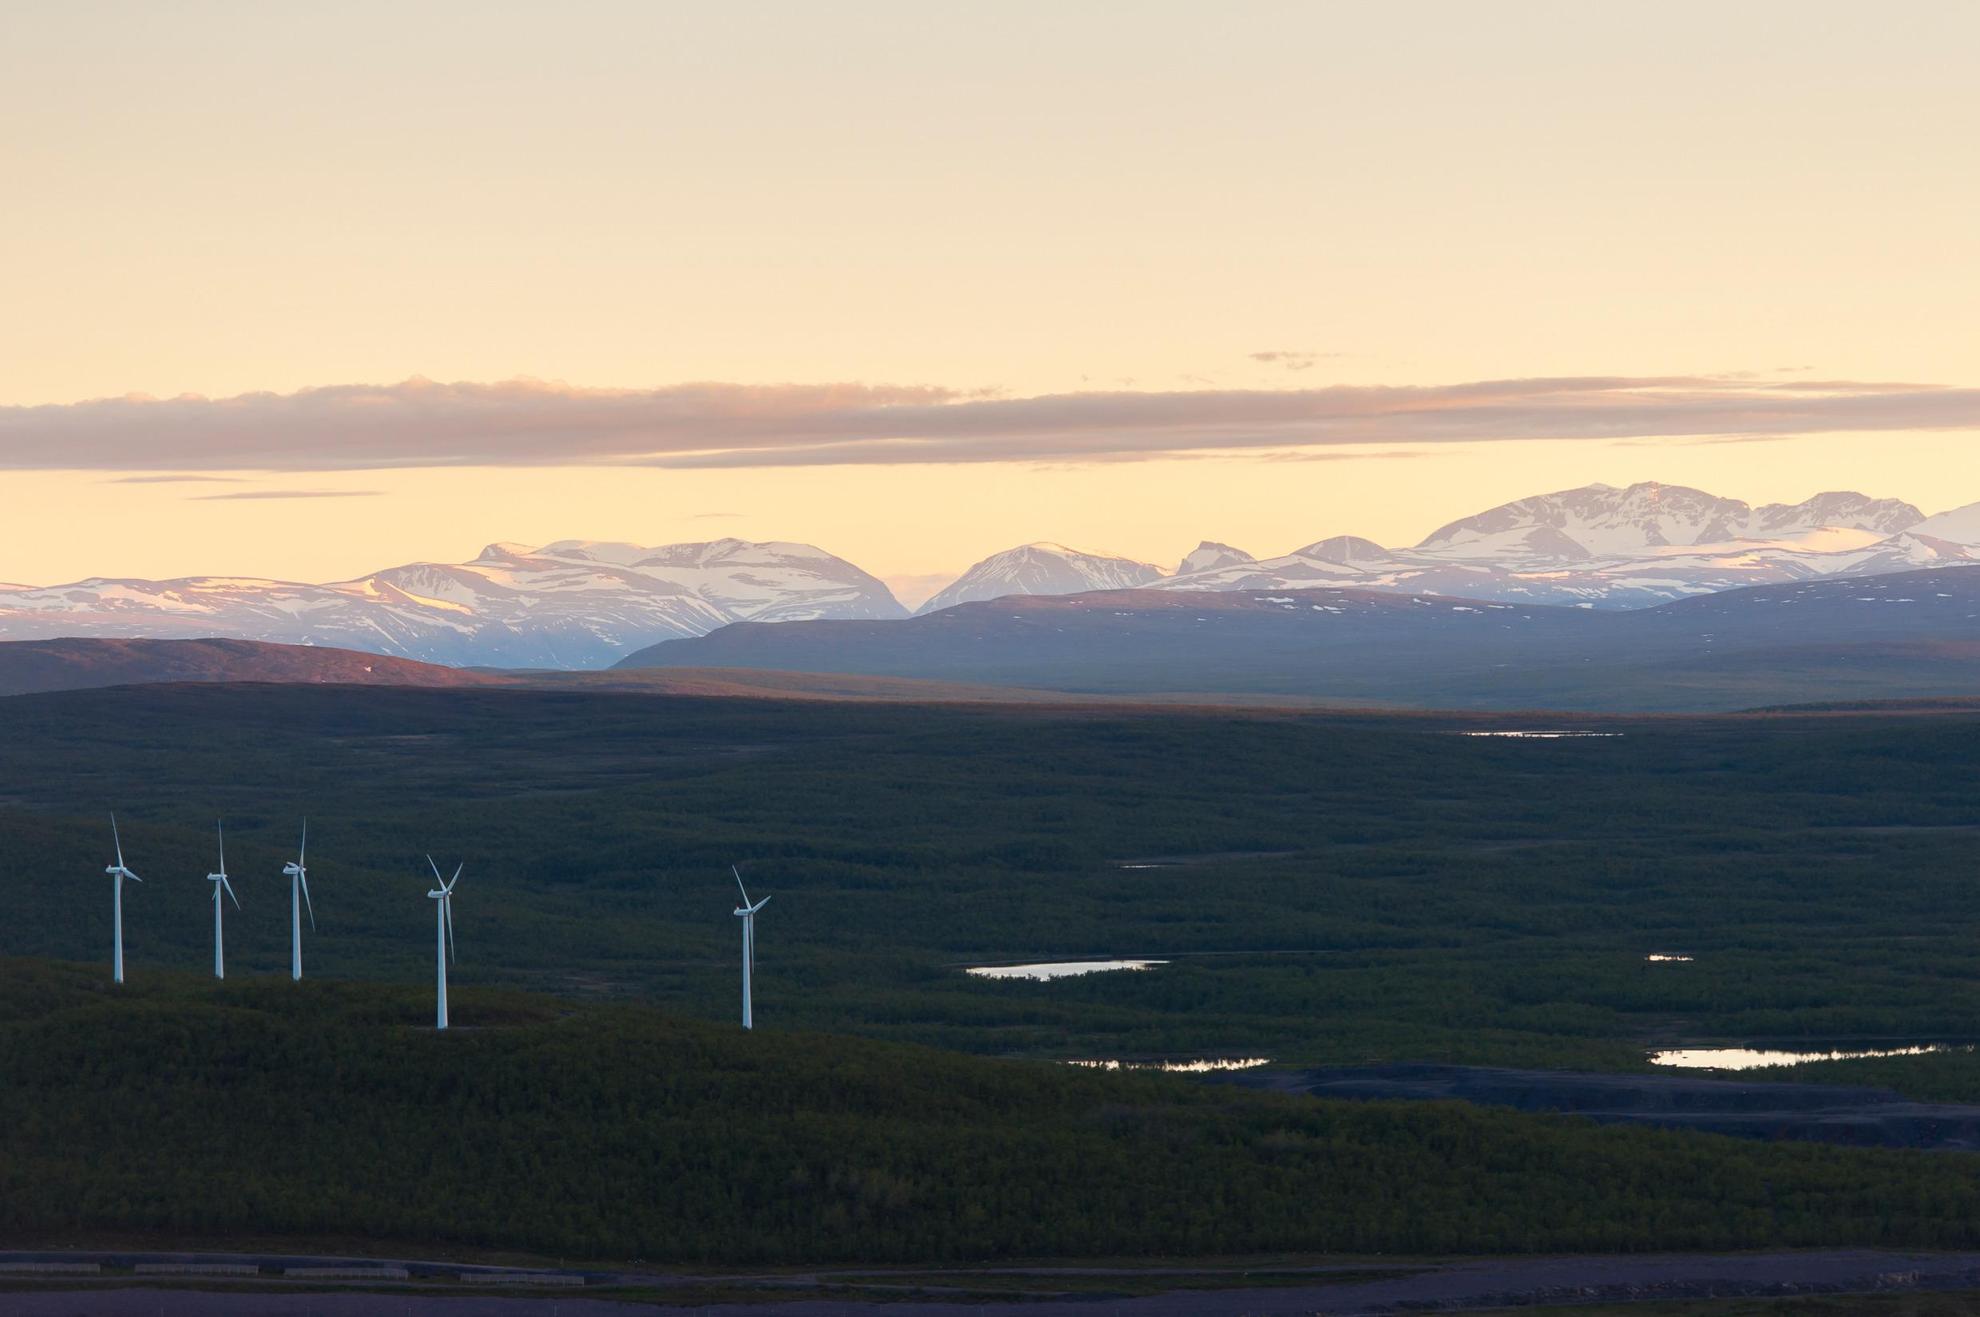 Im Vordergrund eine Tundralandschaft mit fünf Windkraftwerken, im Hintergrund ein Gebirgsmassiv  mit schneebedeckter Bergkette. Der Himmel ist aprikosenfarben.